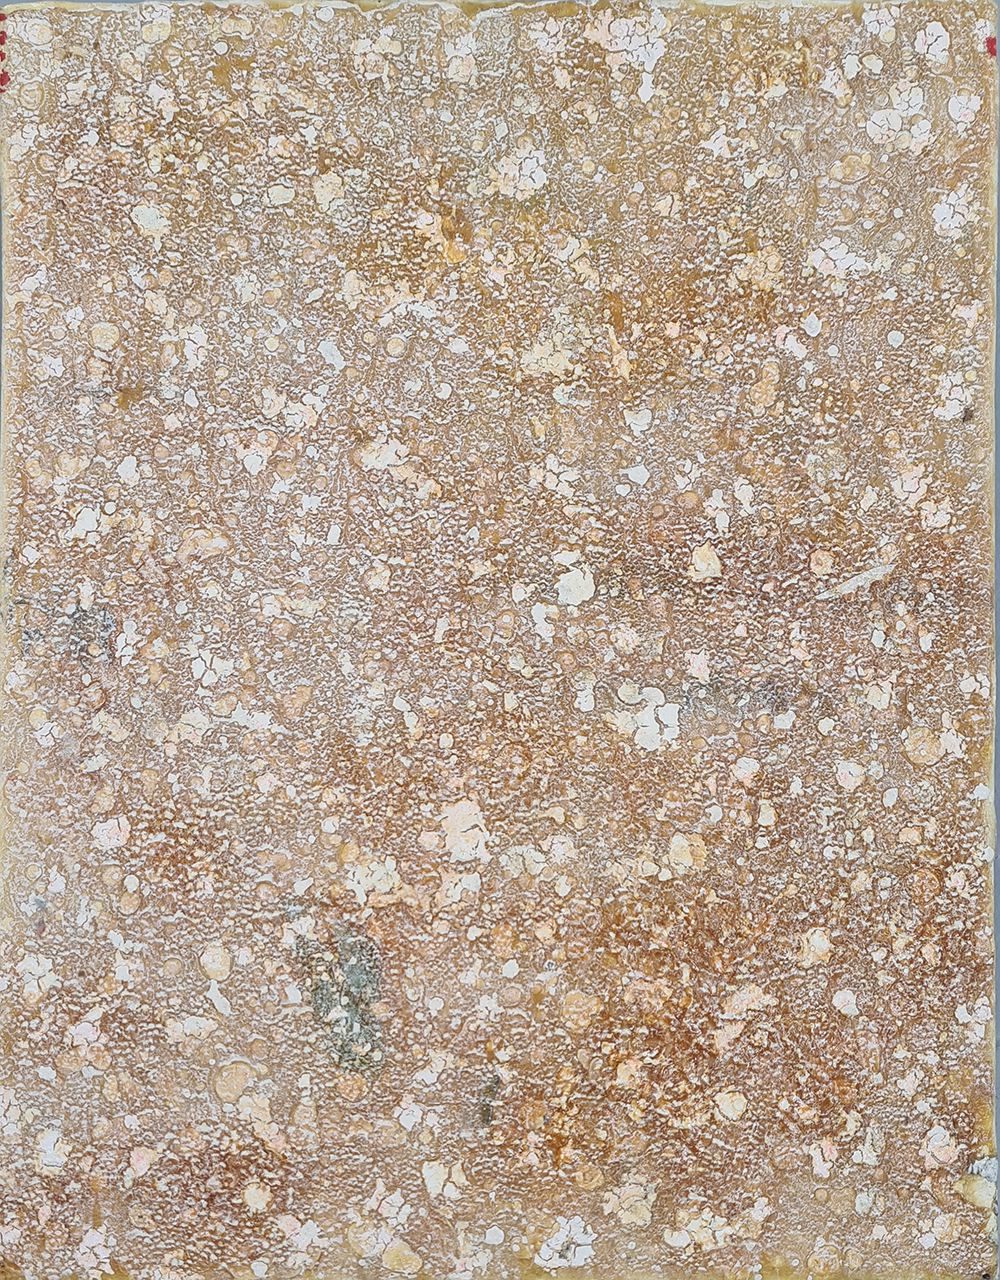 João Jacinto, Sem Título G7-129, 1997, 30x24 cm, óleo sobre tela BD